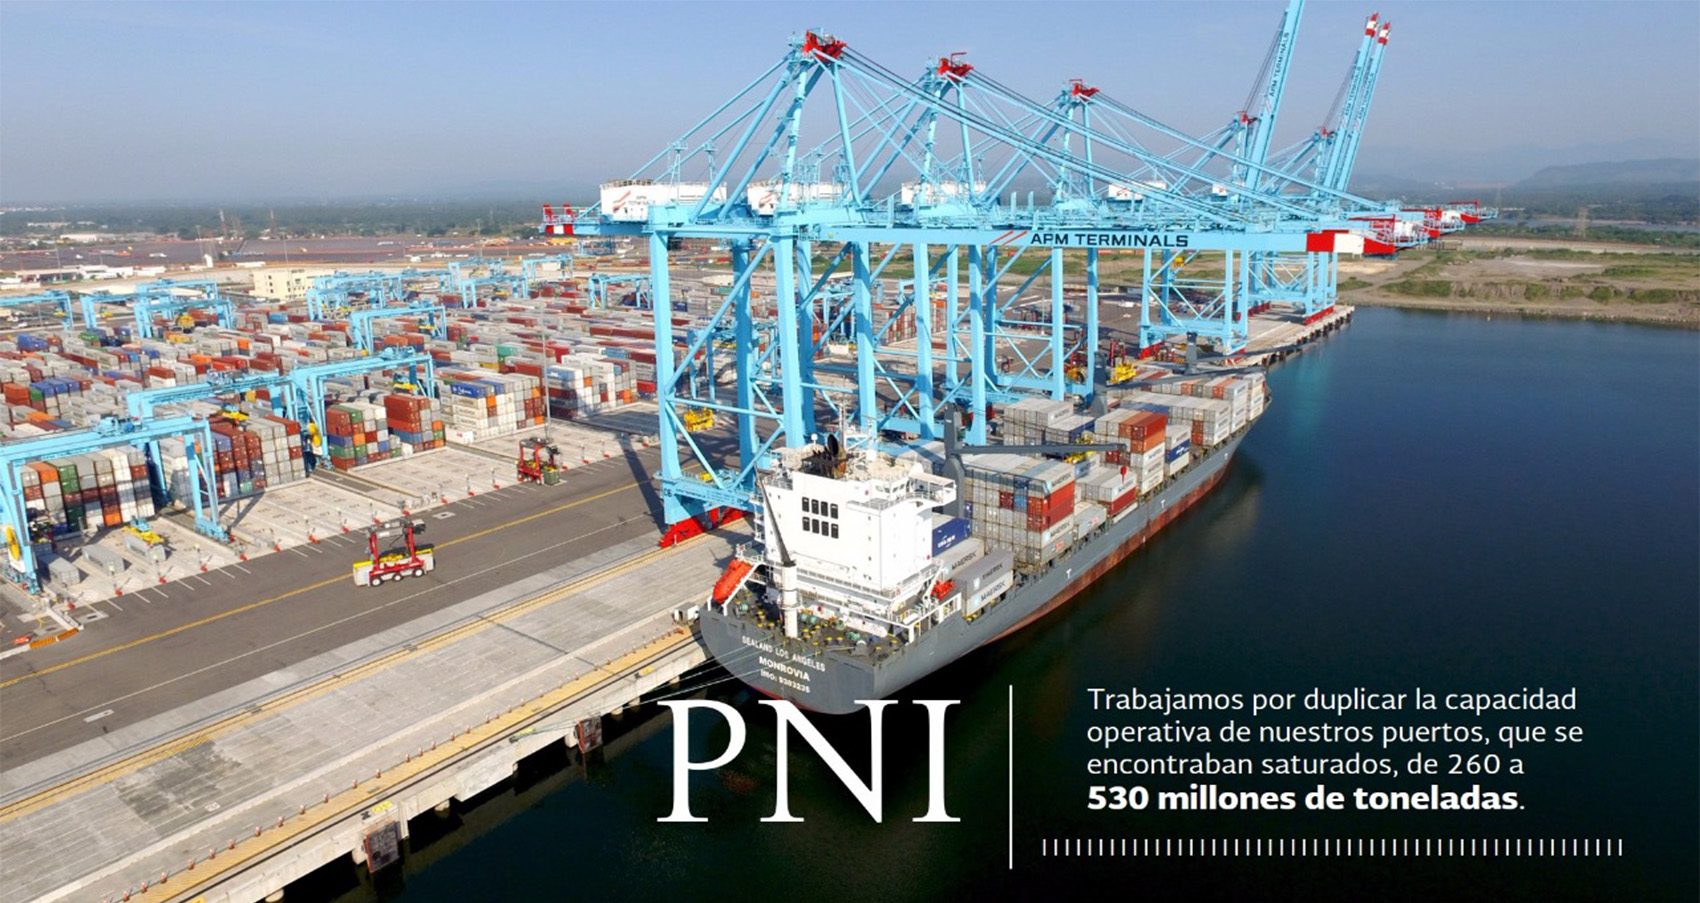 Se logró, que los puertos sean autosuficientes, ya no dependen de recursos fiscales, ya no son una carga para el país, sino un instrumento de aportación de recursos y del desarrollo regional.